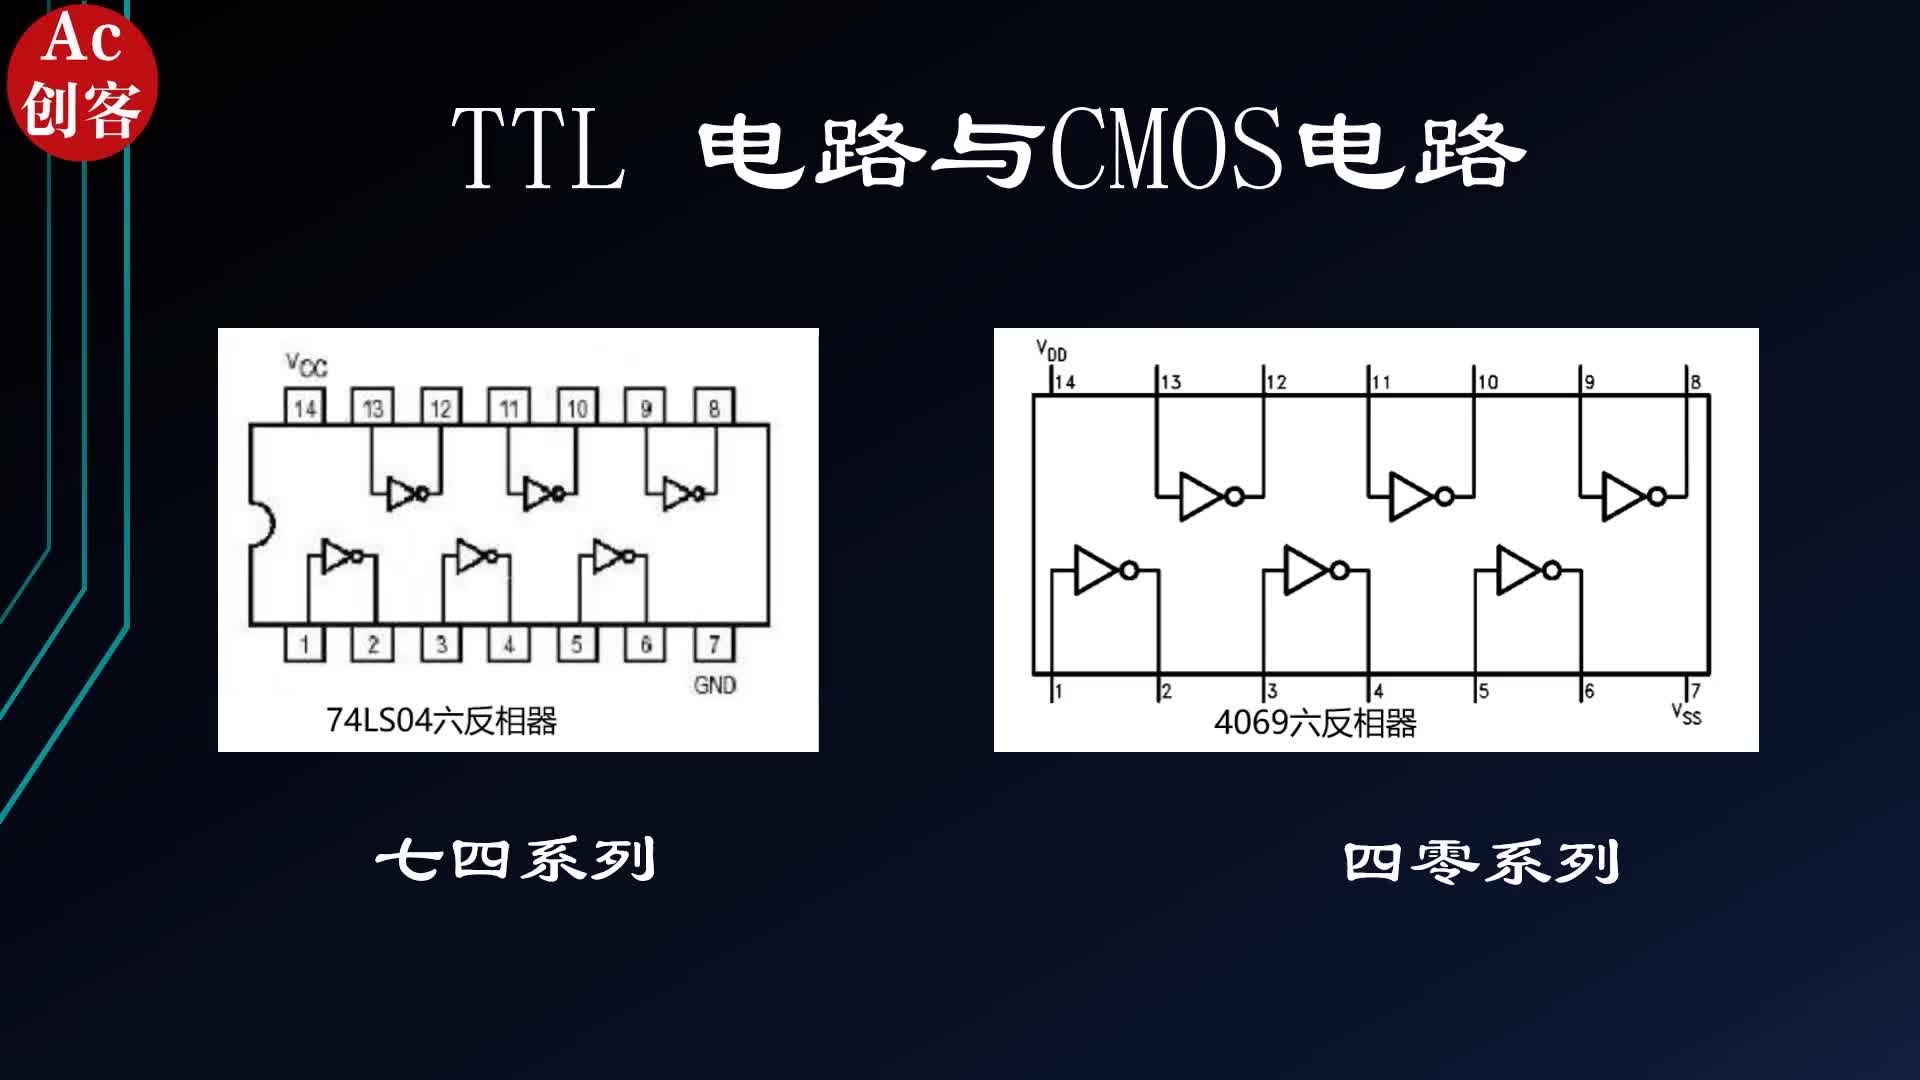 数字芯片有ttl电路和CMOS电路，你都知道吗